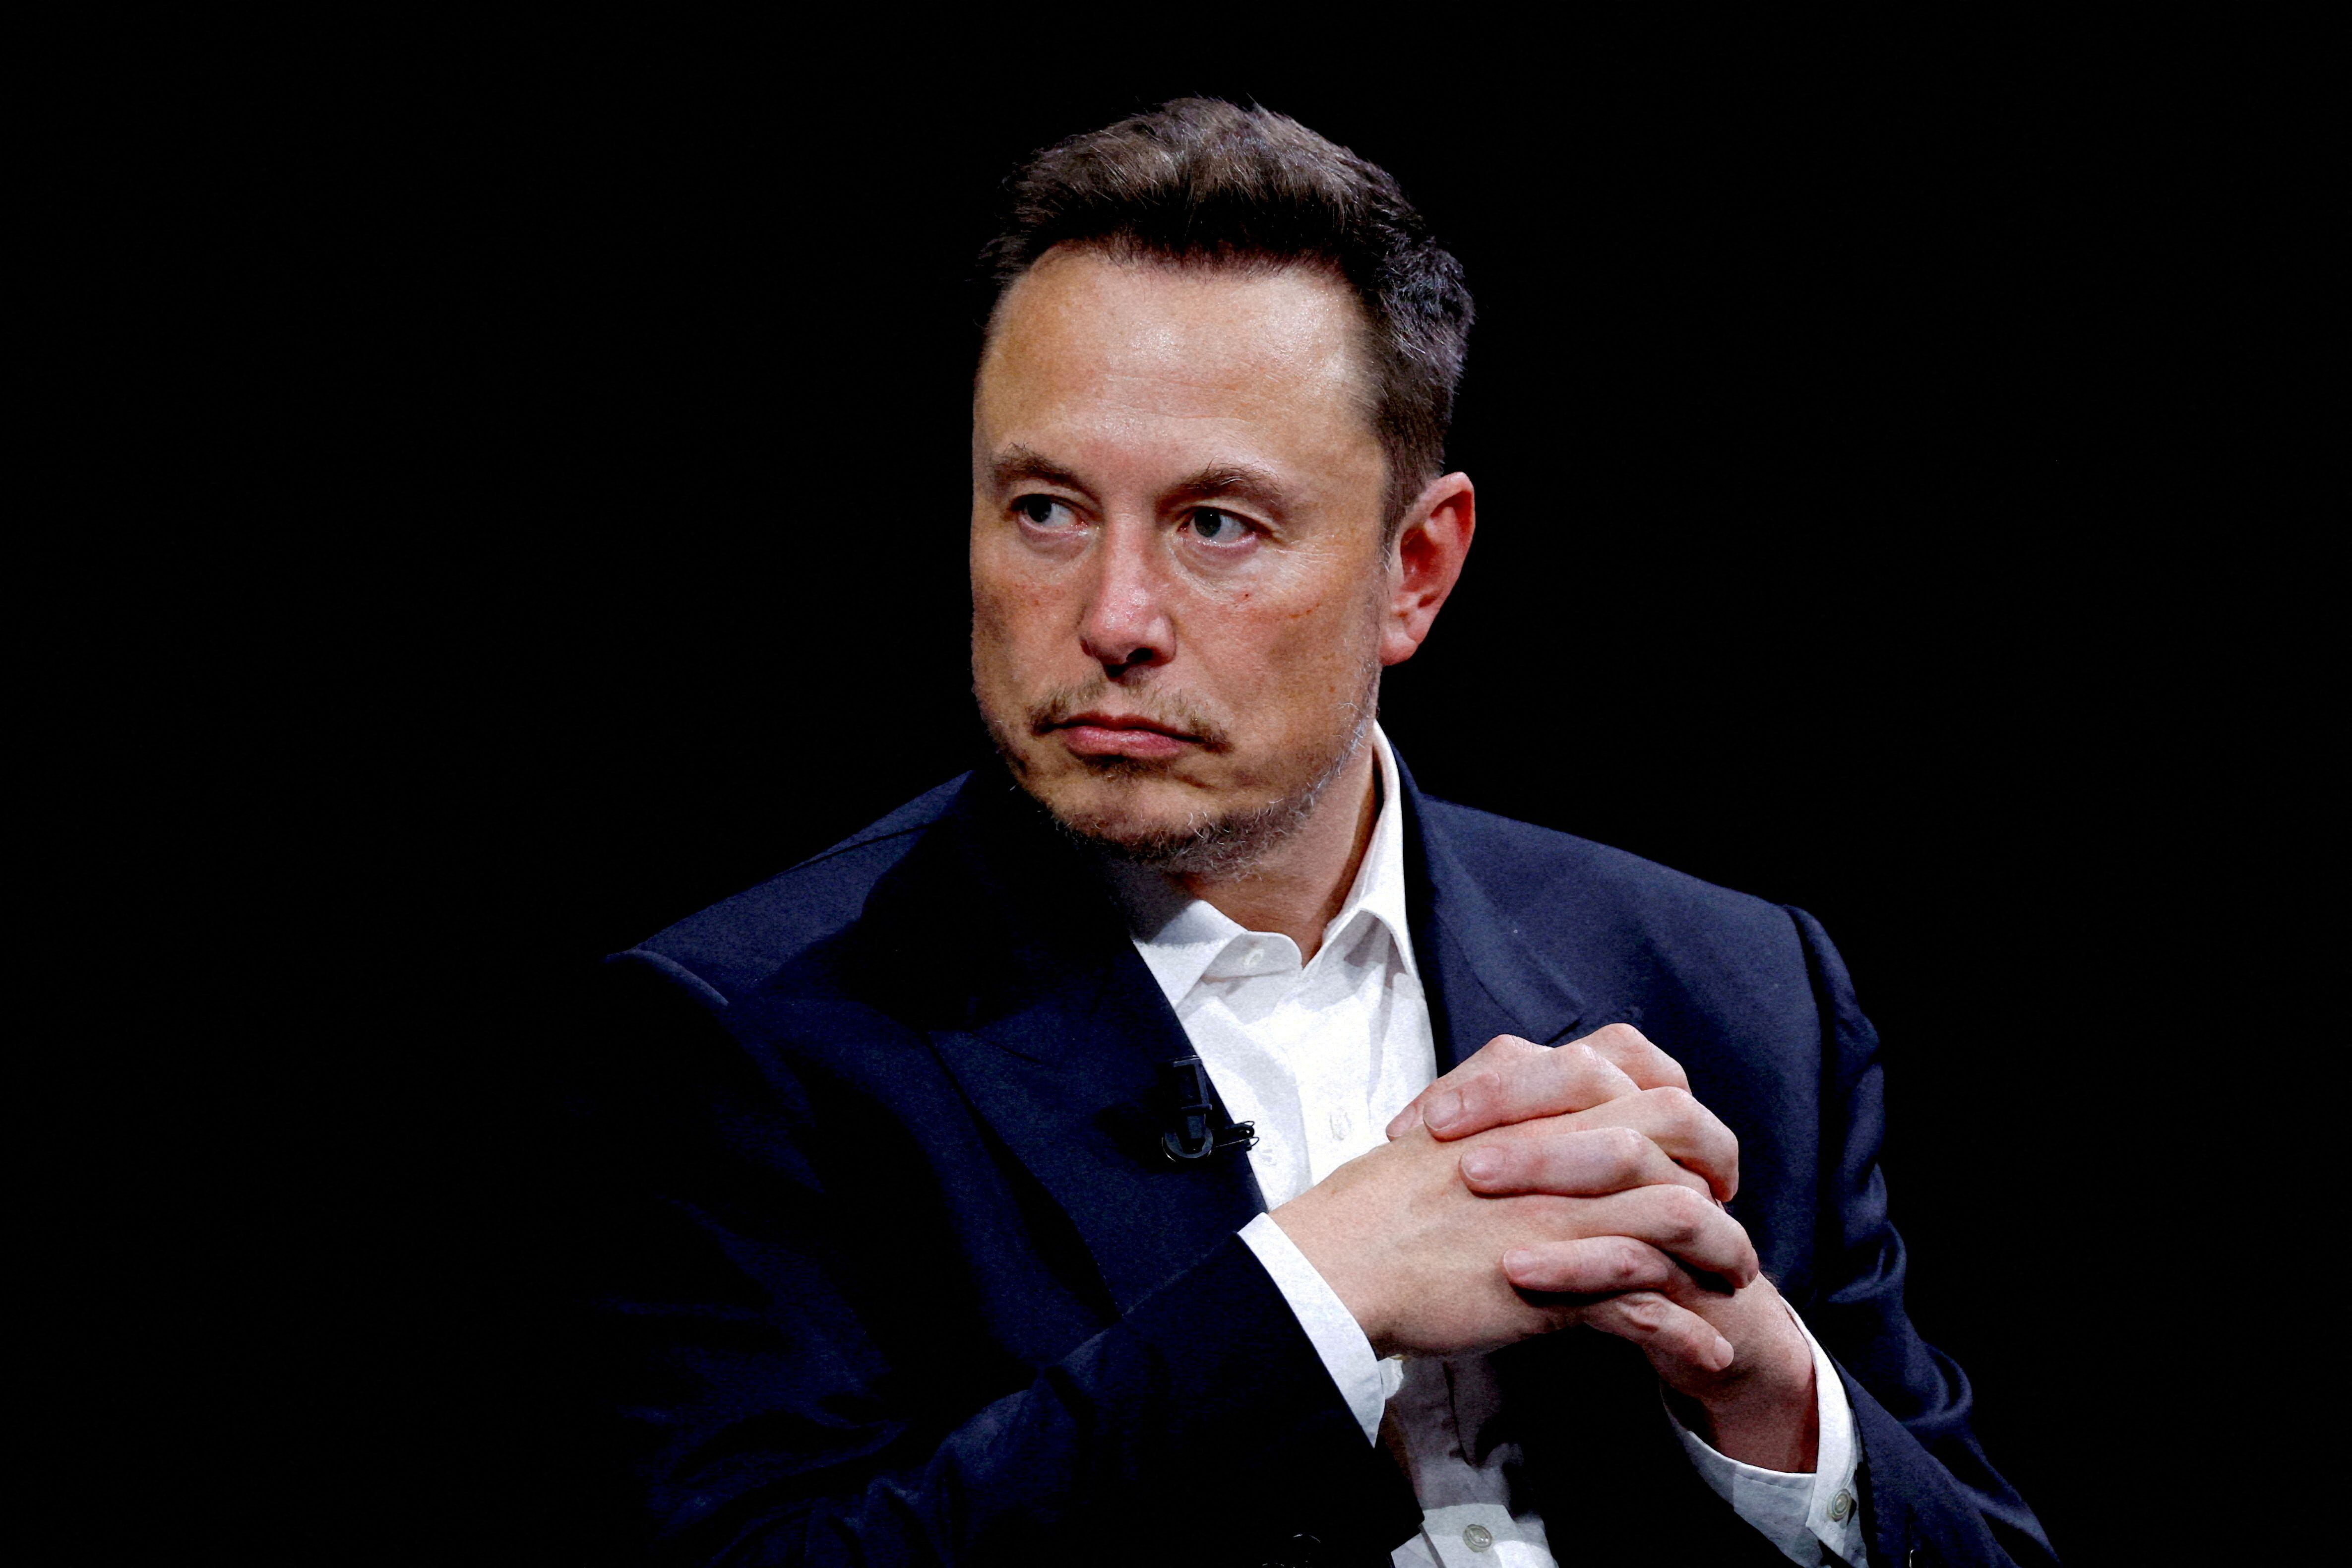 La letra X se ha convertido en parte de la identidad de marca de Musk. (REUTERS/Gonzalo Fuentes)